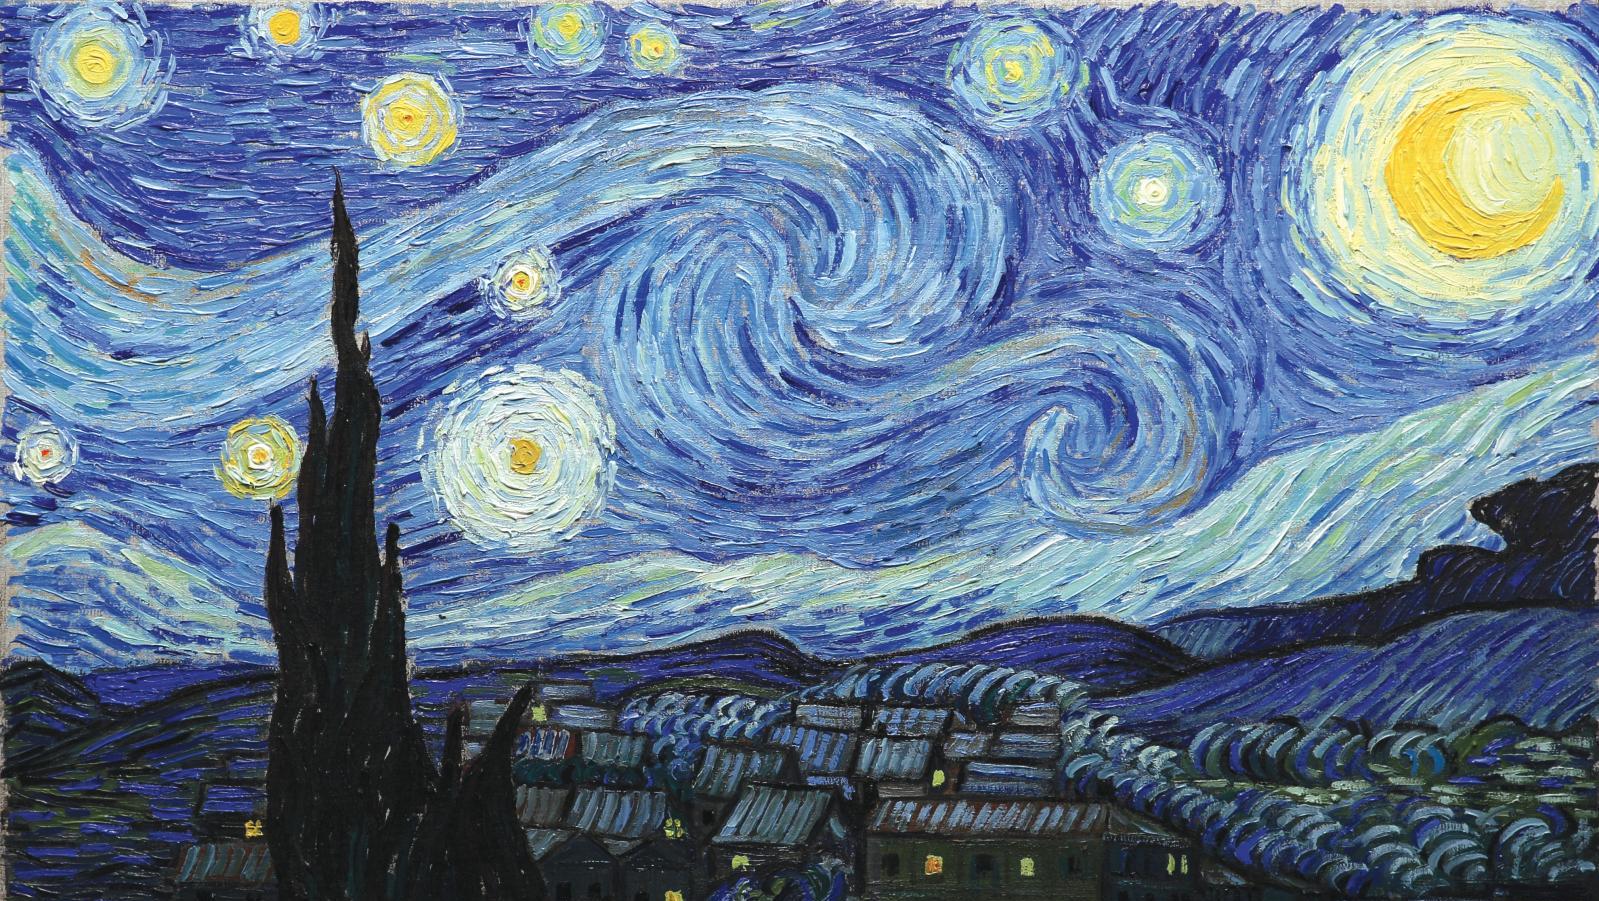 Sur l’écran, les ciels tourmentés du peintre s’animent et transportent le spectateur... La passion Van Gogh : entrez dans la toile !